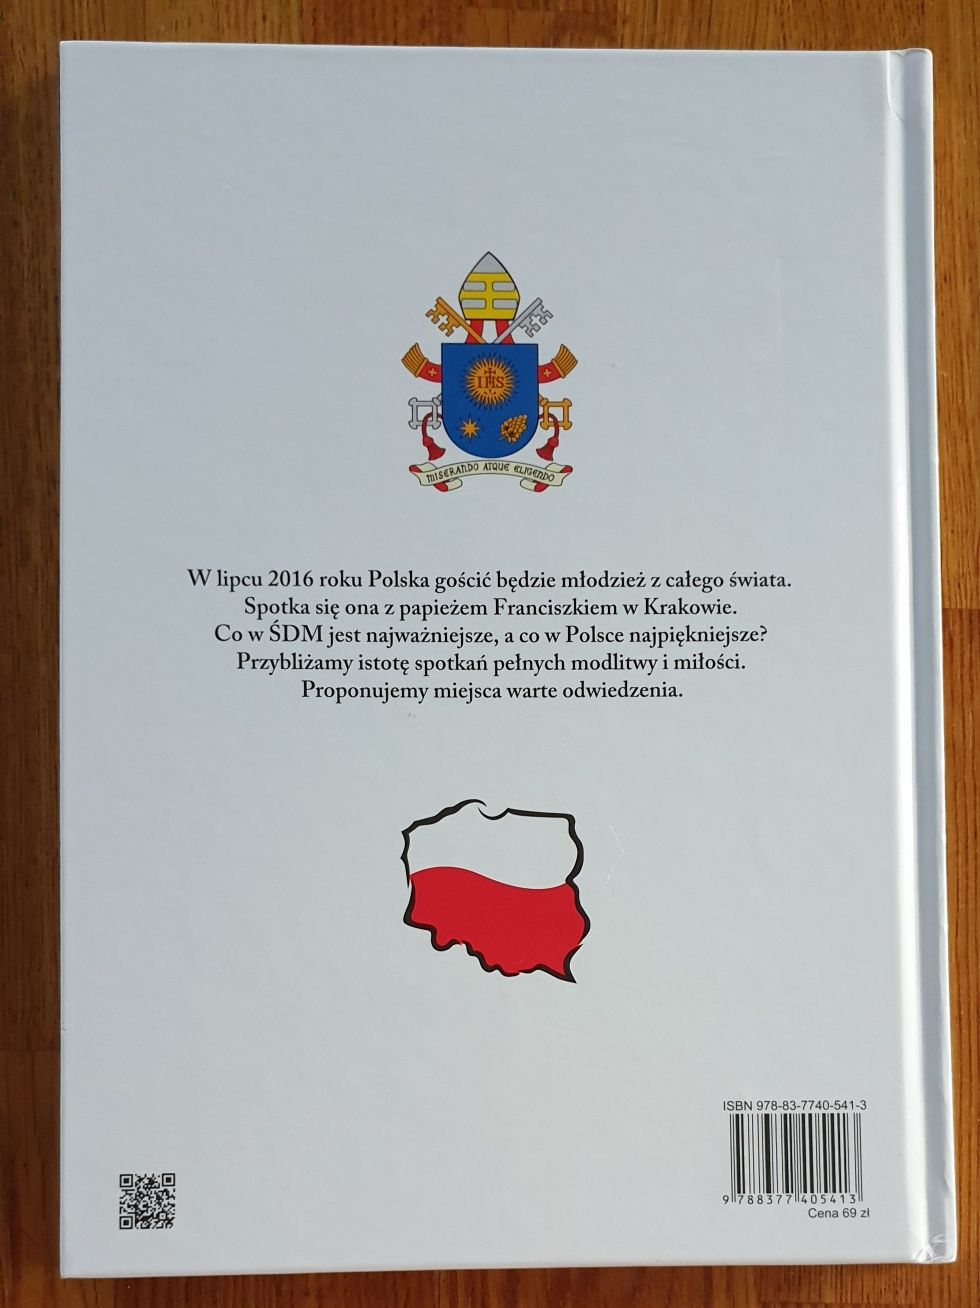 Album "Witaj Polsko. Światowe Dni Młodzieży"